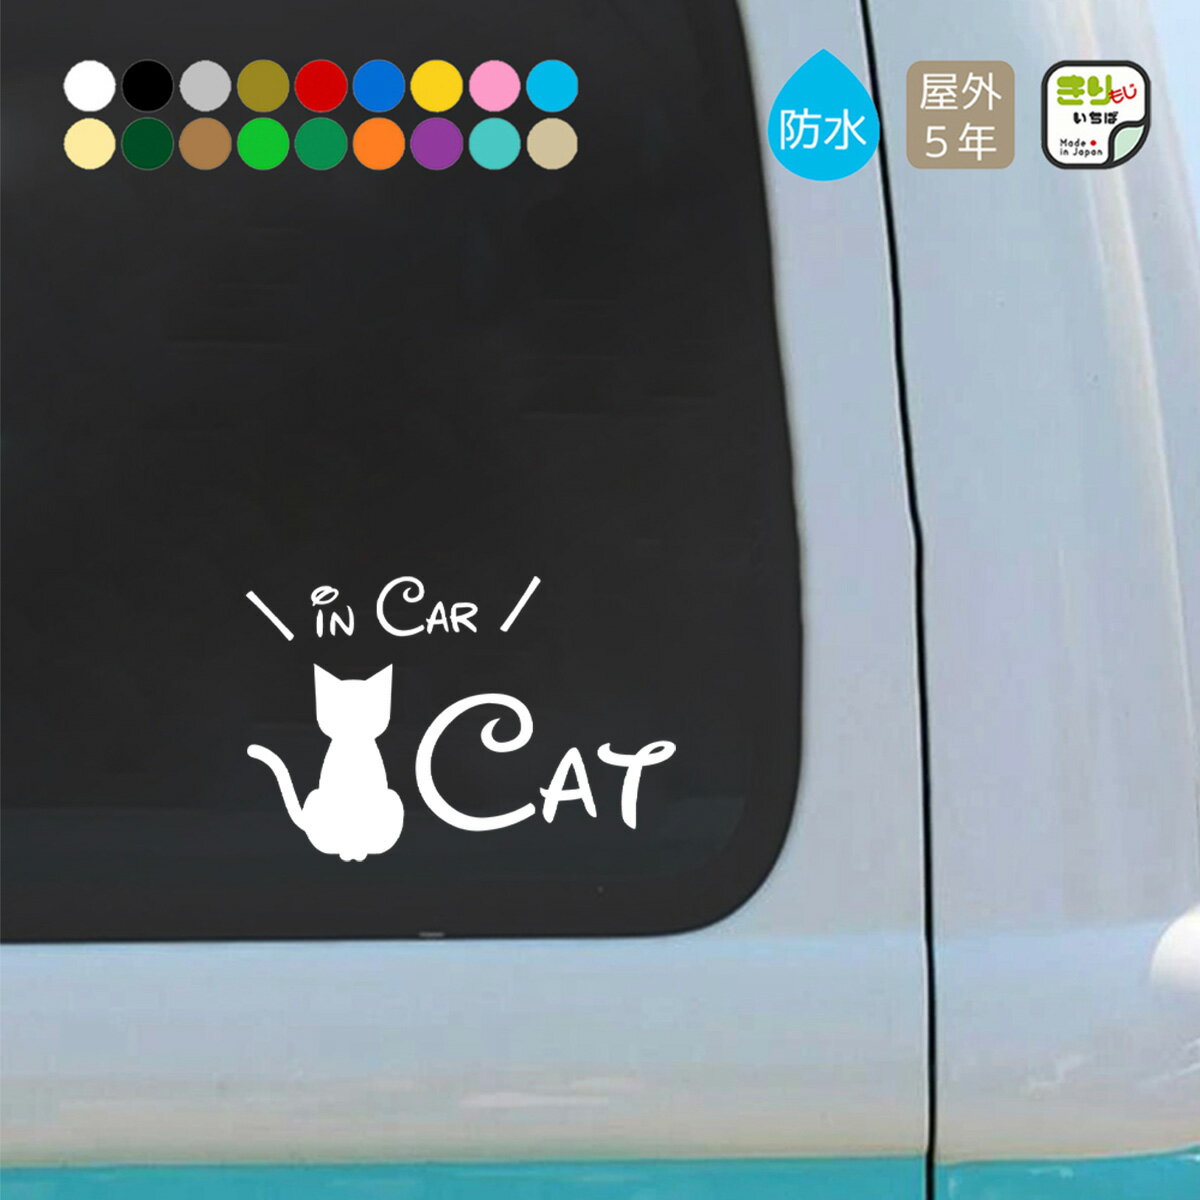 キャットインカー ステッカー 車 おしゃれ CAT IN CAR 猫 乗ってます カッティングステッカー 猫ステッカー シール 防水 キャット cat ペット PET ペット用品 猫用品 カーステッカー シンプル かわいい カー用品 きりもじいちば